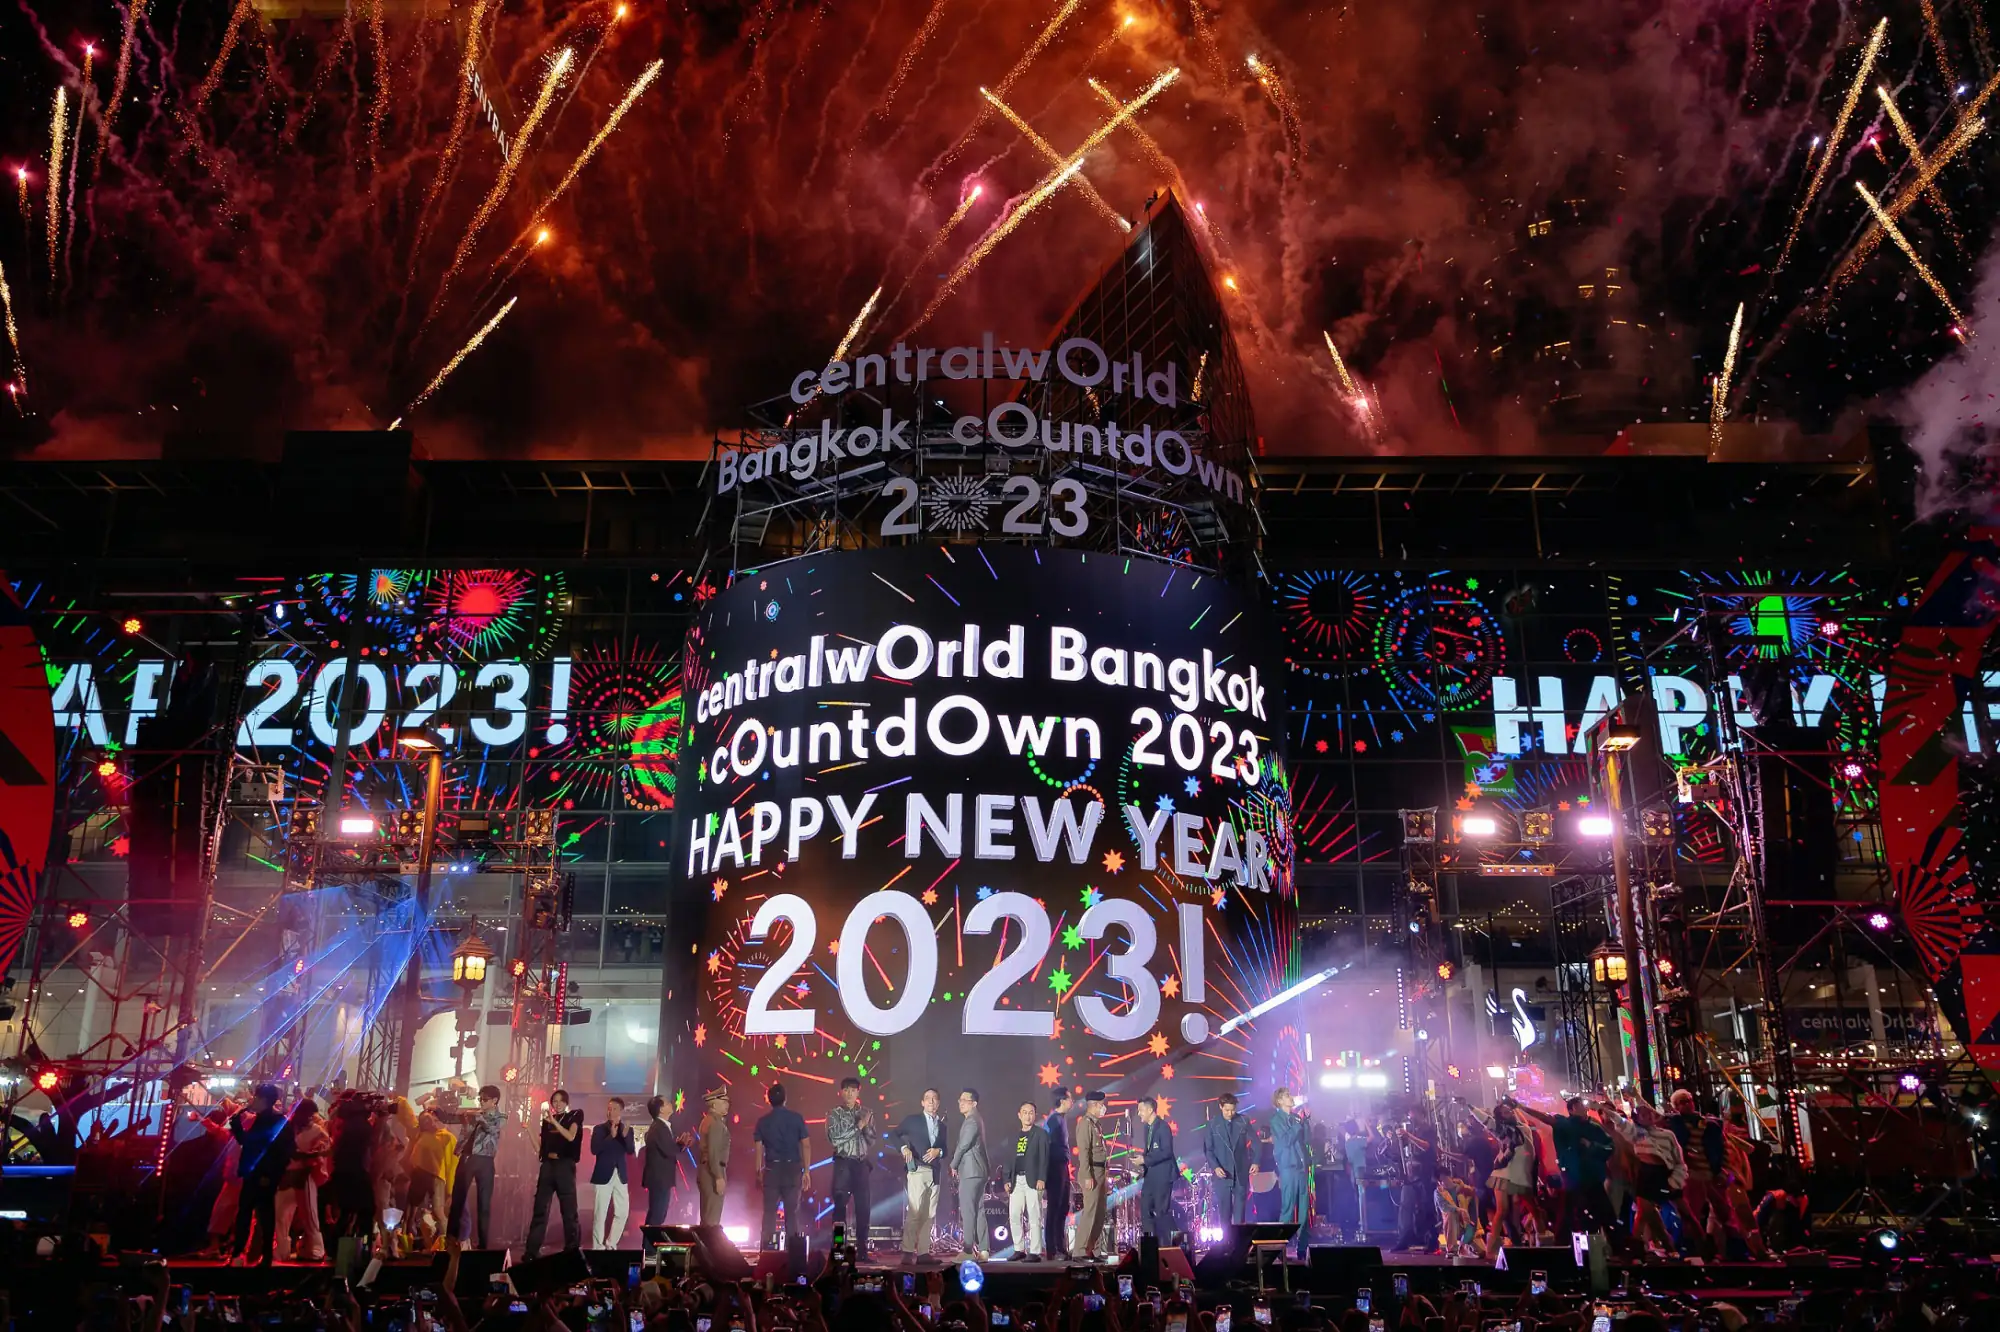 曼谷centralwOrld尚泰世界購物中心2023跨年晚會回顧（圖片來源：centralwOrld提供）